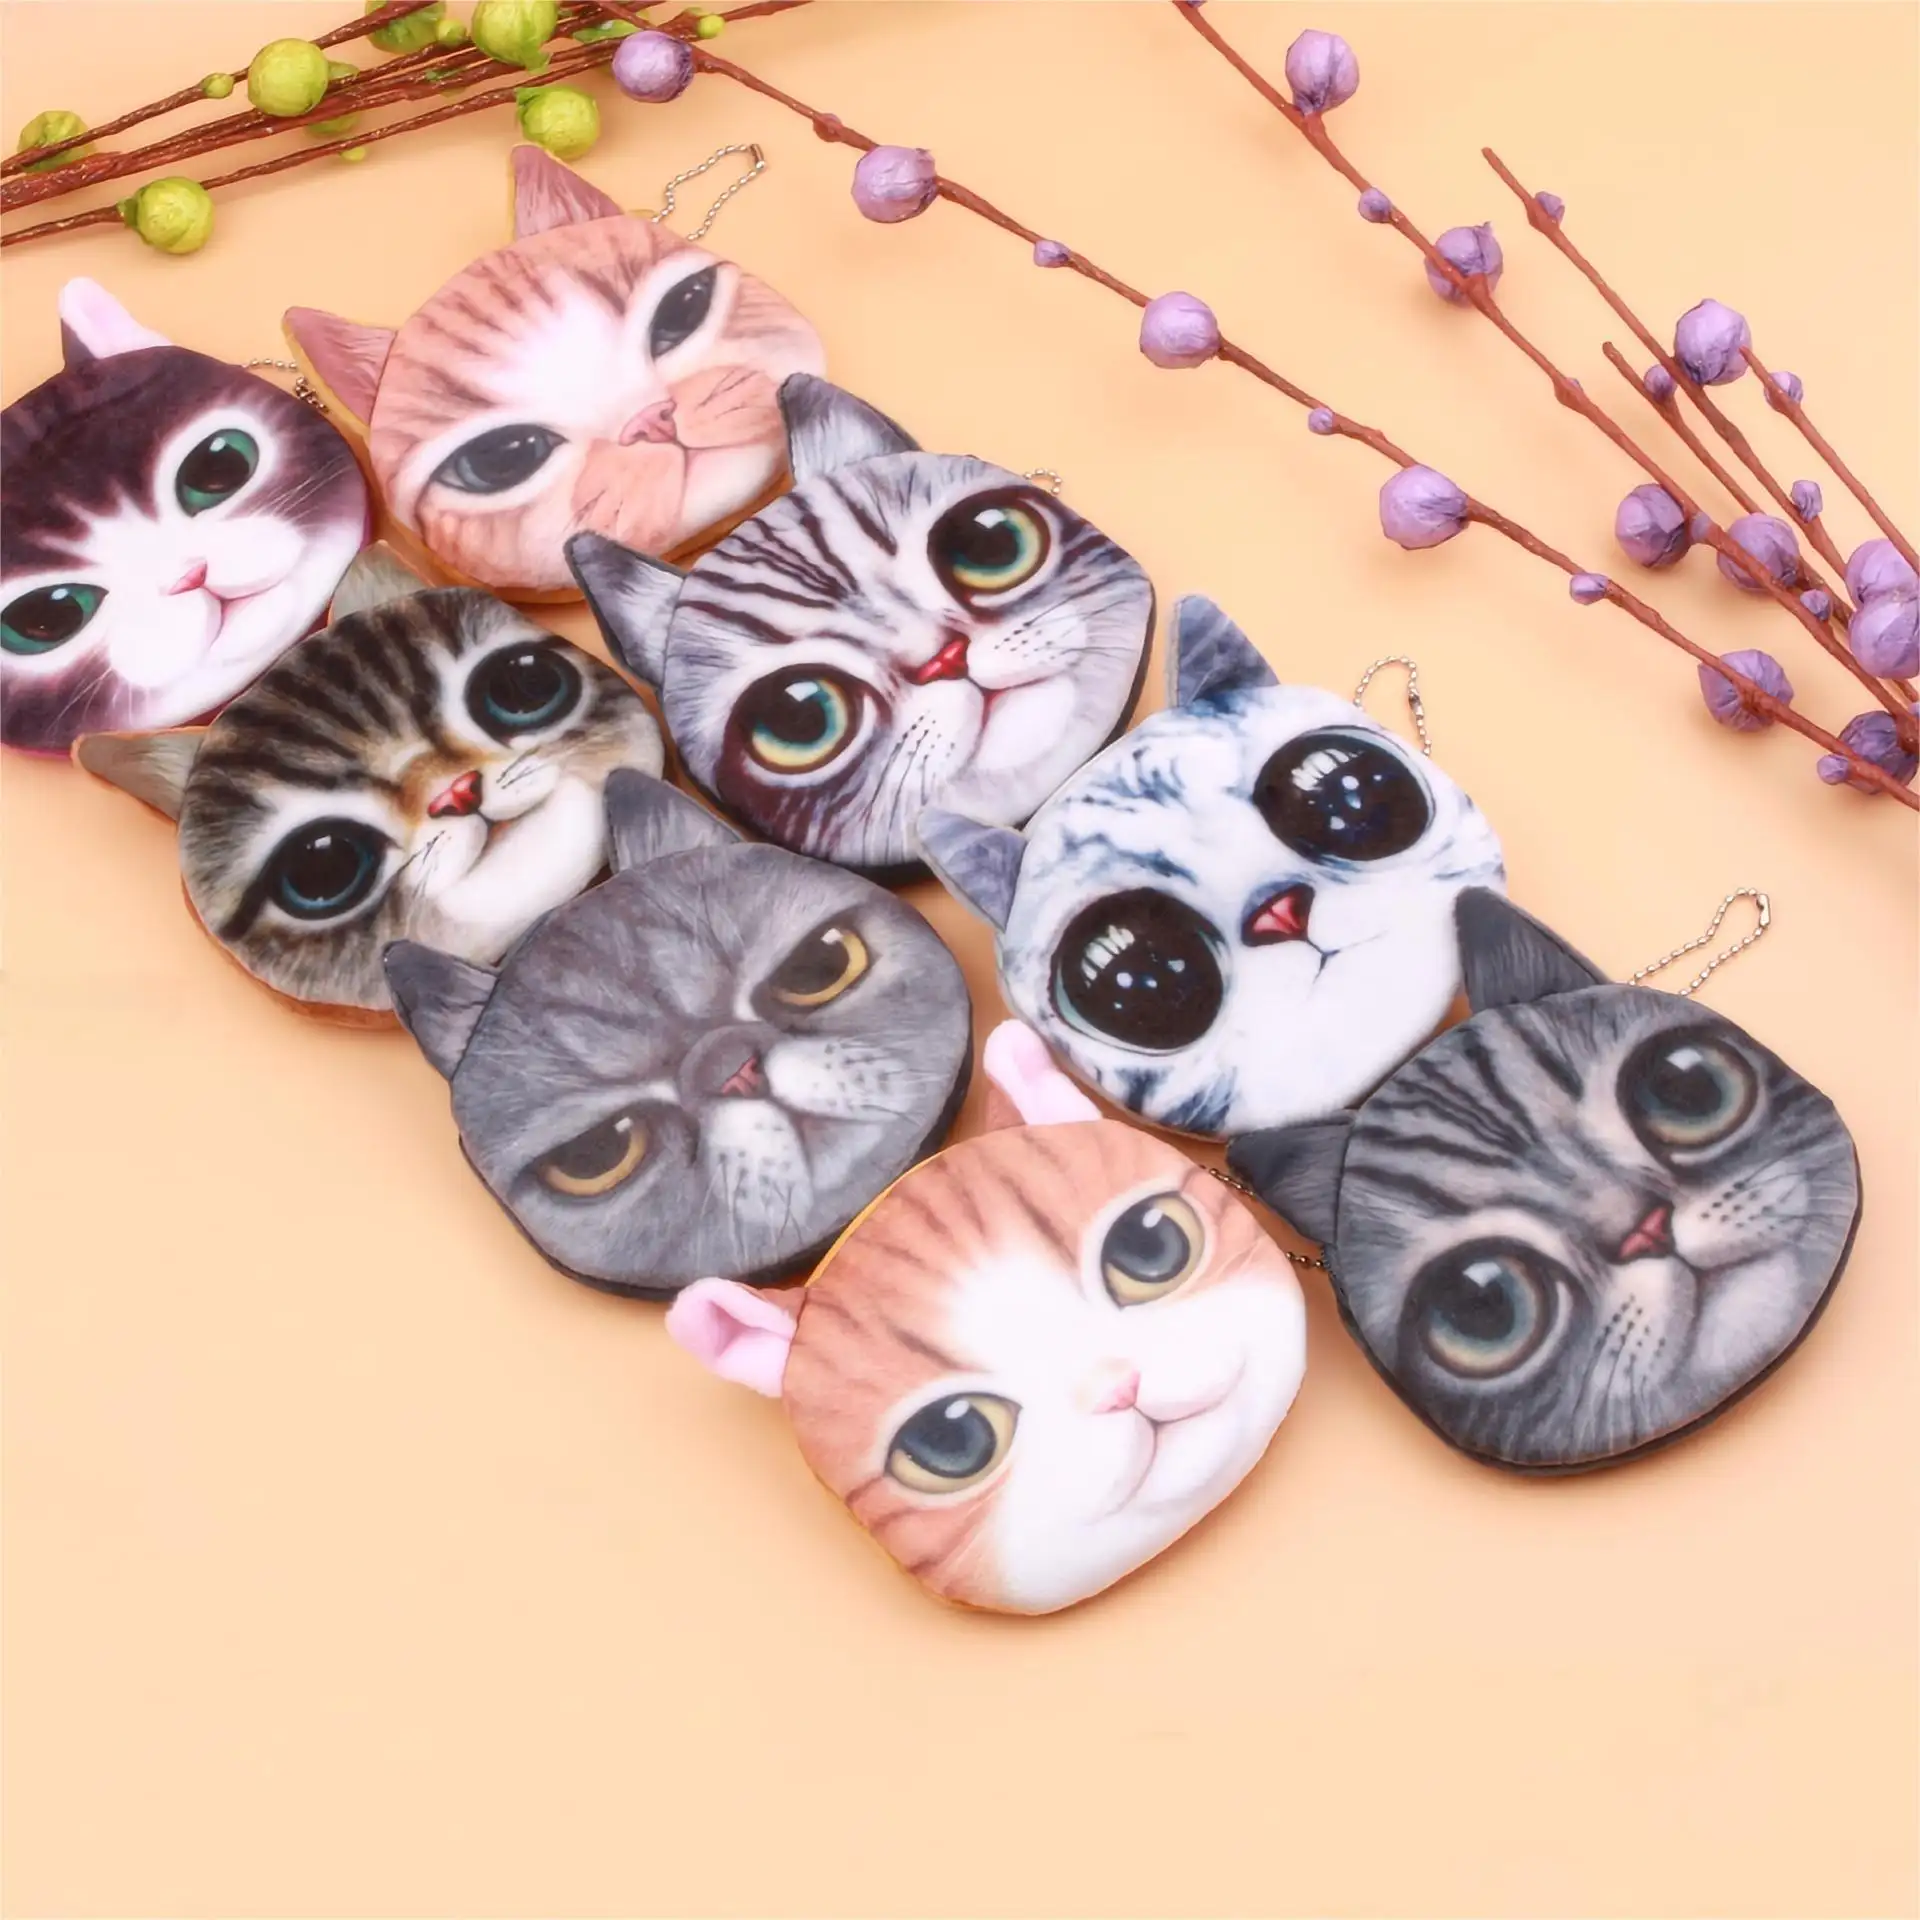 Großhandel Neue Produkte Verschiedene Farben Katzen-Design Neuheit Leinwand-Taschen Mini-Münze-Kasse Schlüsselanhänger Brieftasche für Kinder Mädchen